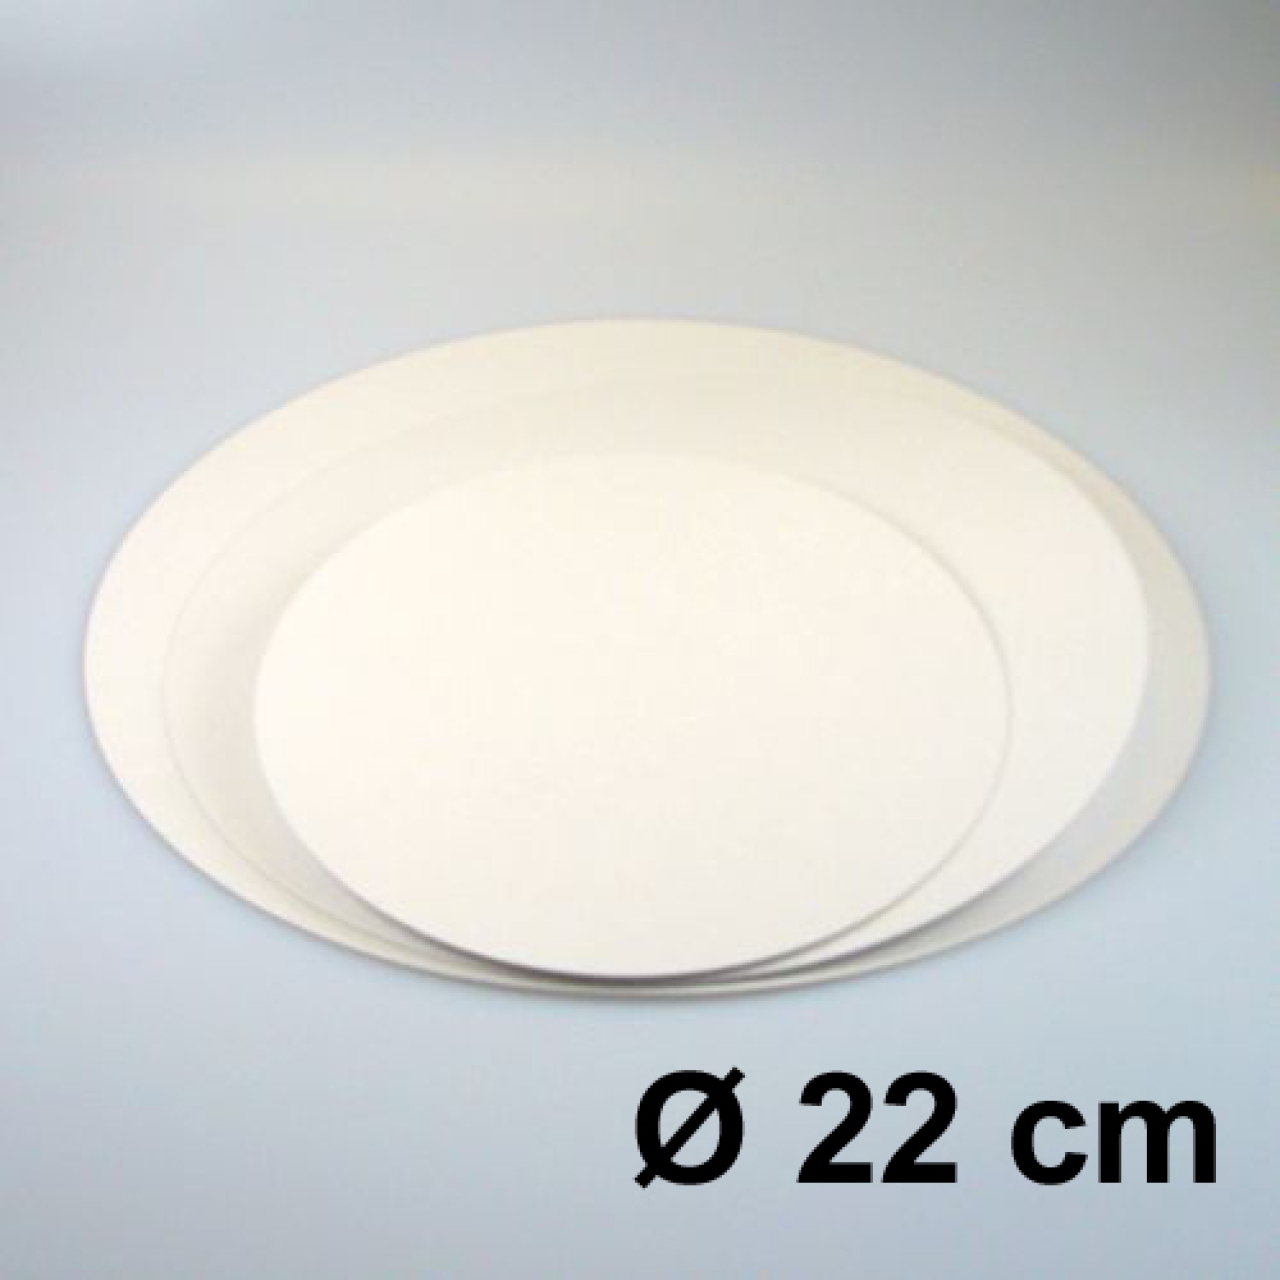 Tortenscheiben 22 cm Weiß